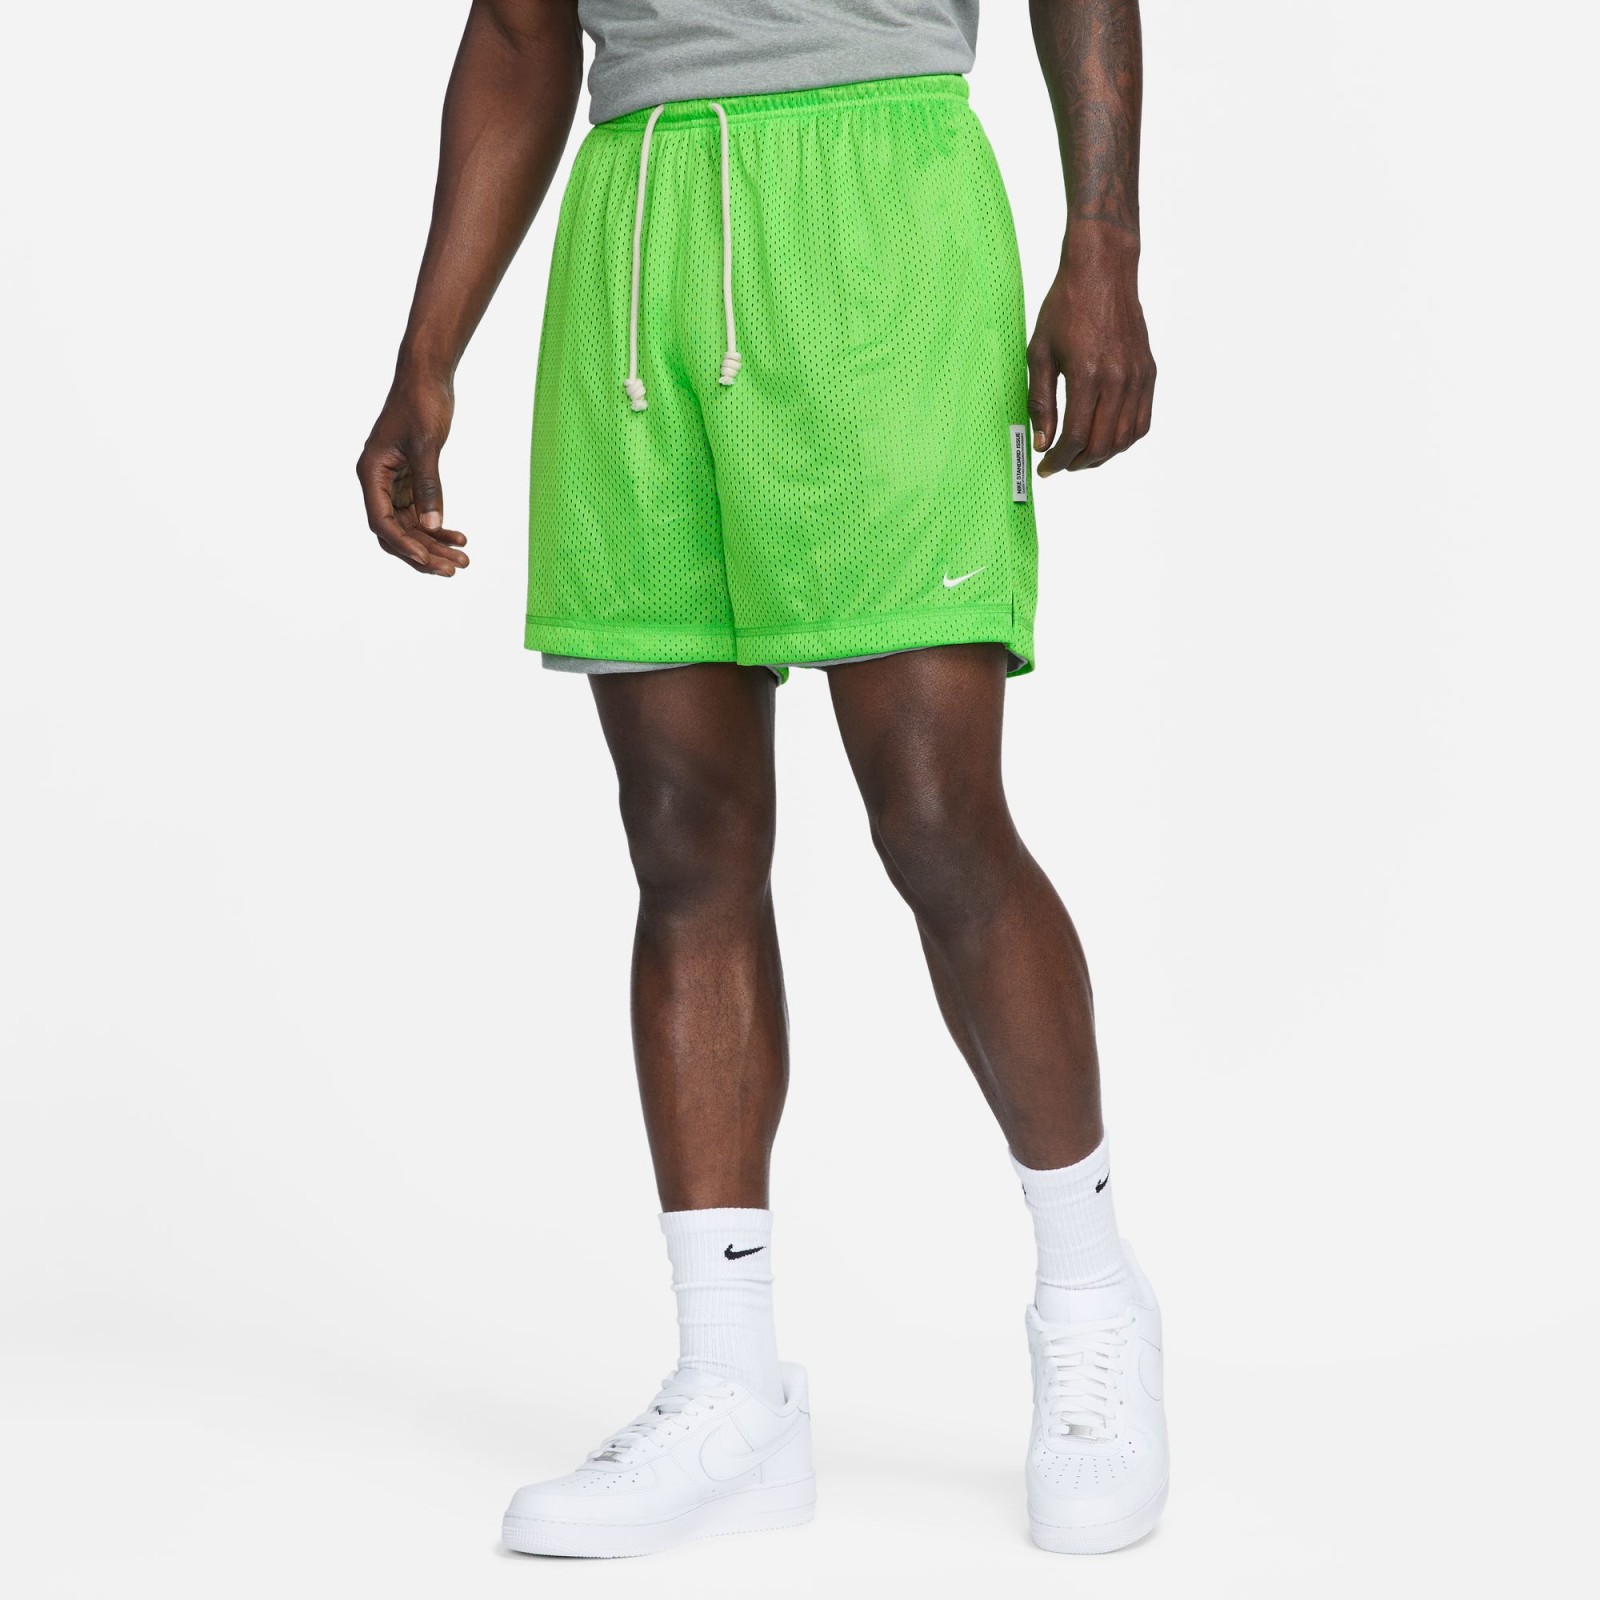 Levně Nike Dri-FIT Standard Issue XL